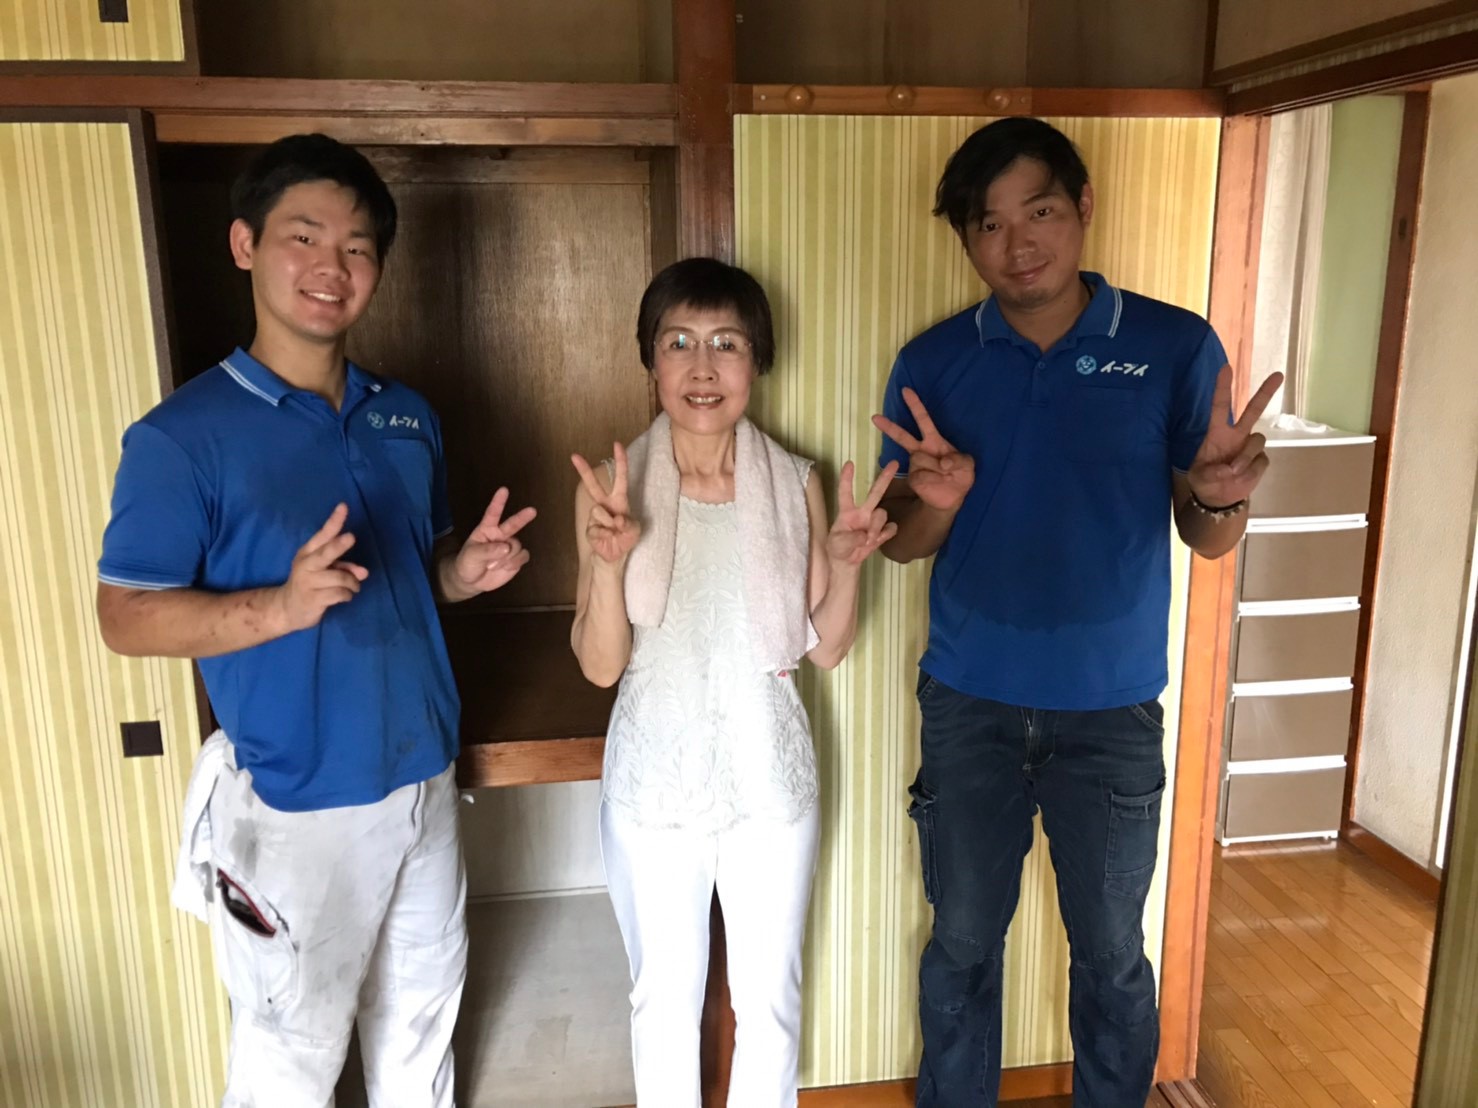 2019年９月３０日大阪府大阪市港区のお客様より、お部屋の片付けに伴った際に出てきたゴミや、不要な家具等の処分をしたいとの事で弊社にご依頼を頂きました。